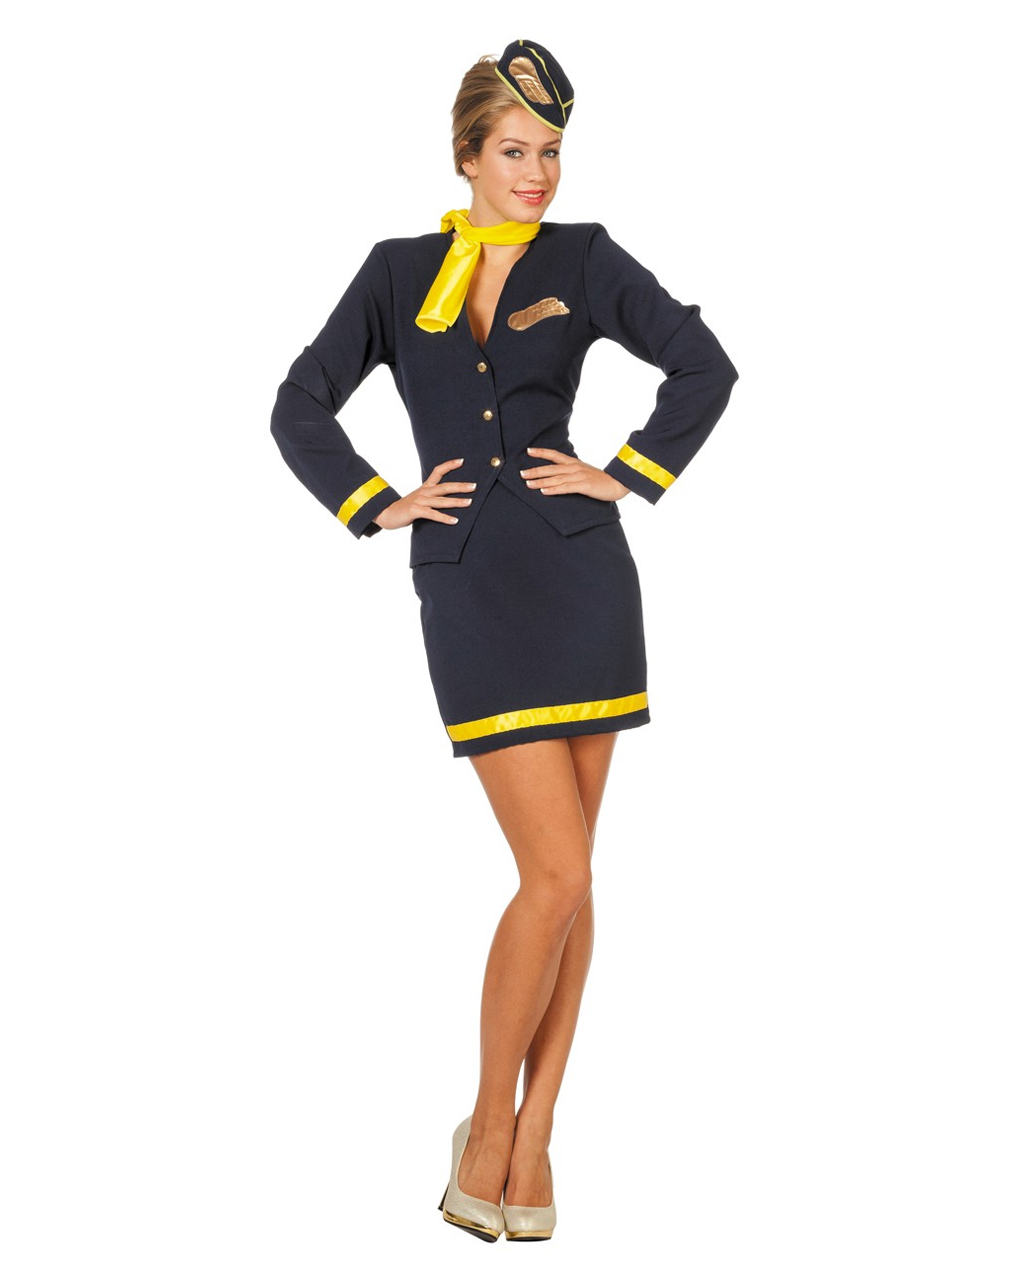 flight attendant costume - www.gklondon.co.uk.